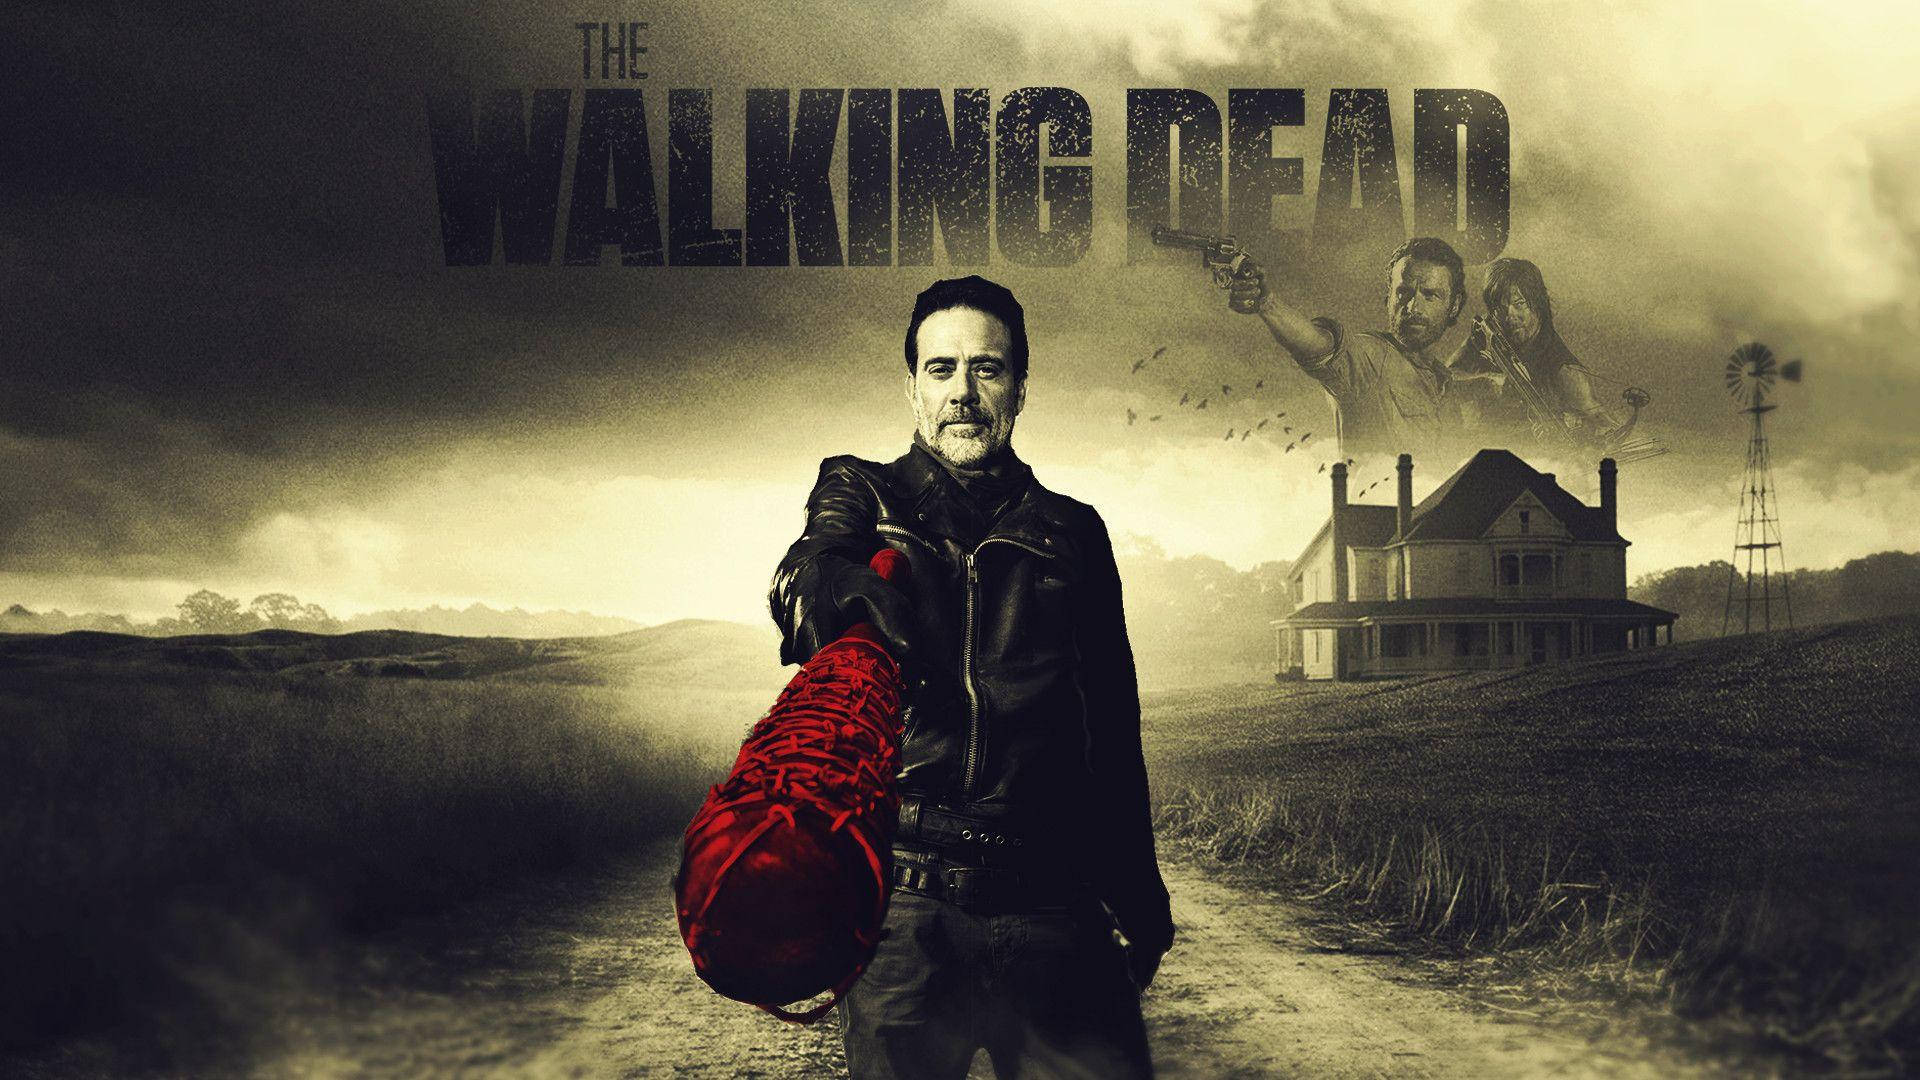 Negan From The Walking Dead Promo Wallpaper